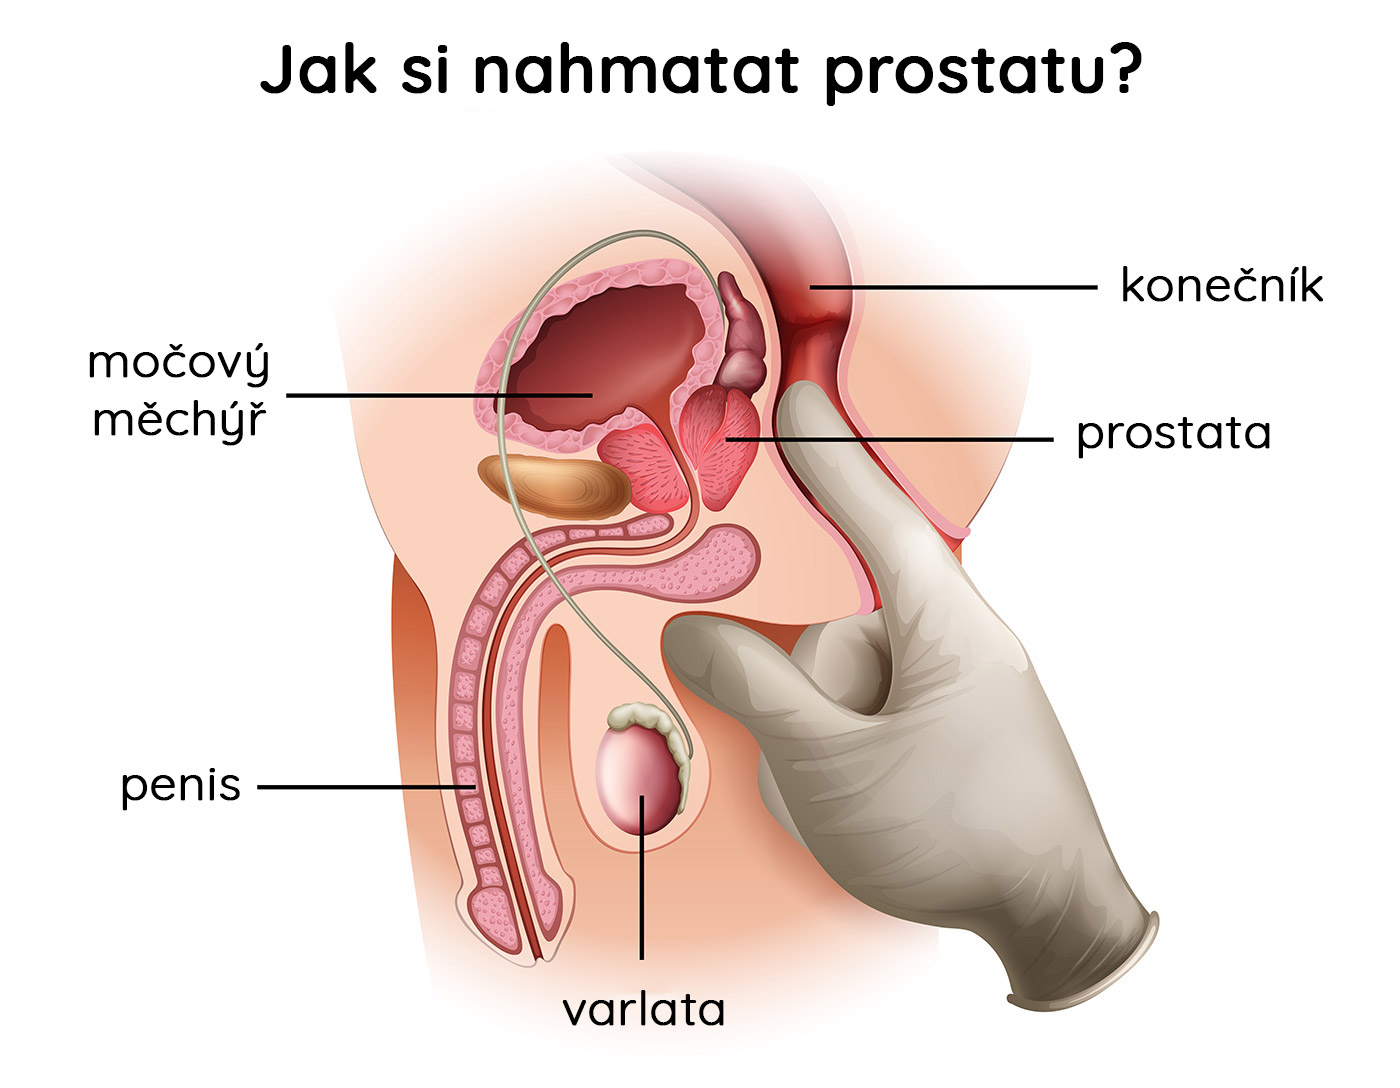 Jak si nahmatat prostatu?